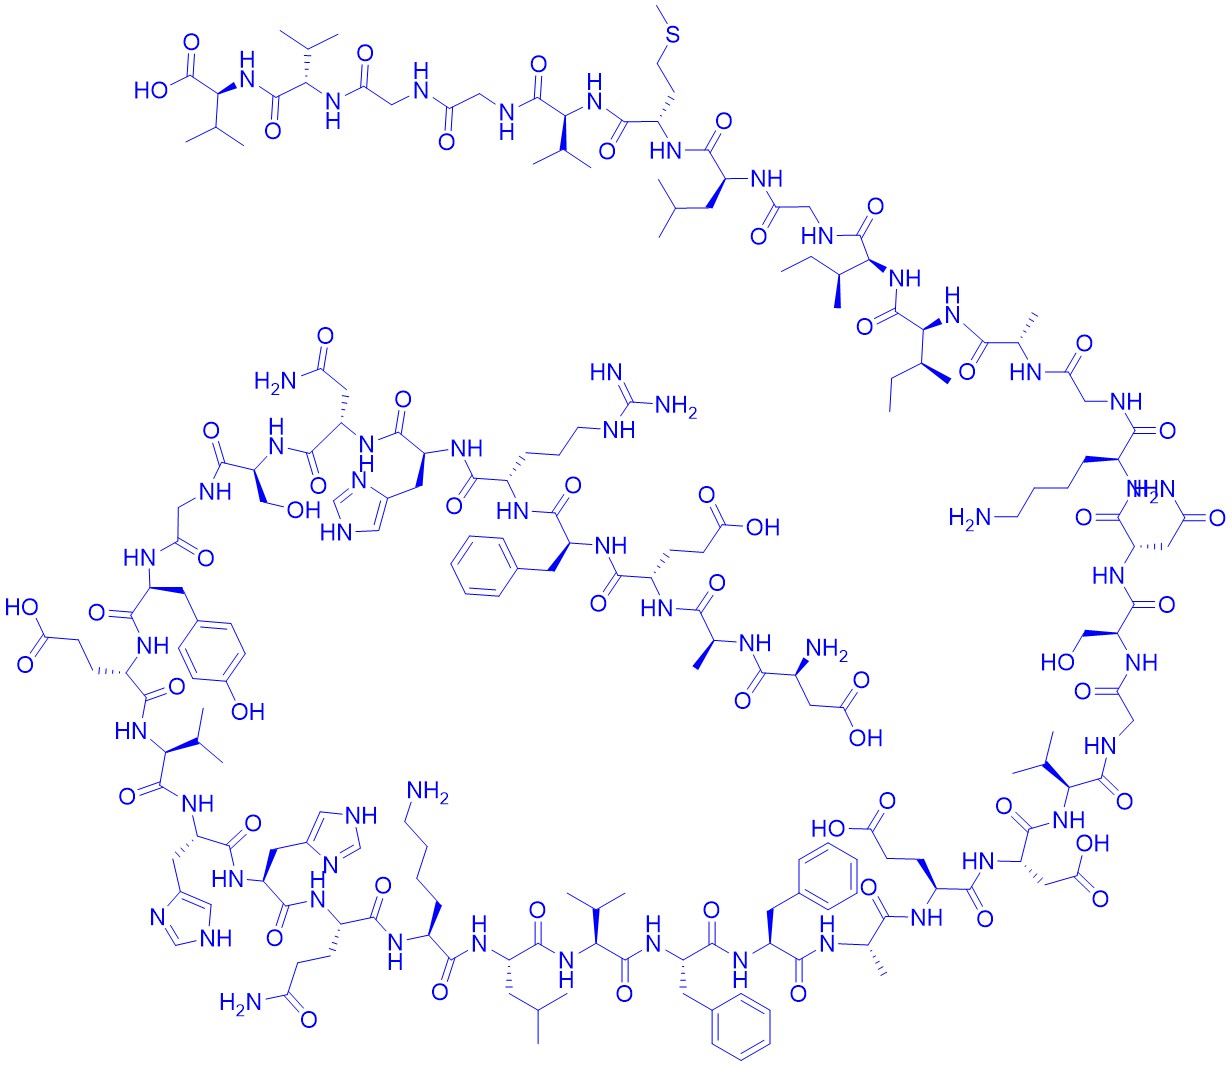 (Asn7)-Amyloid β-Protein (1-40)